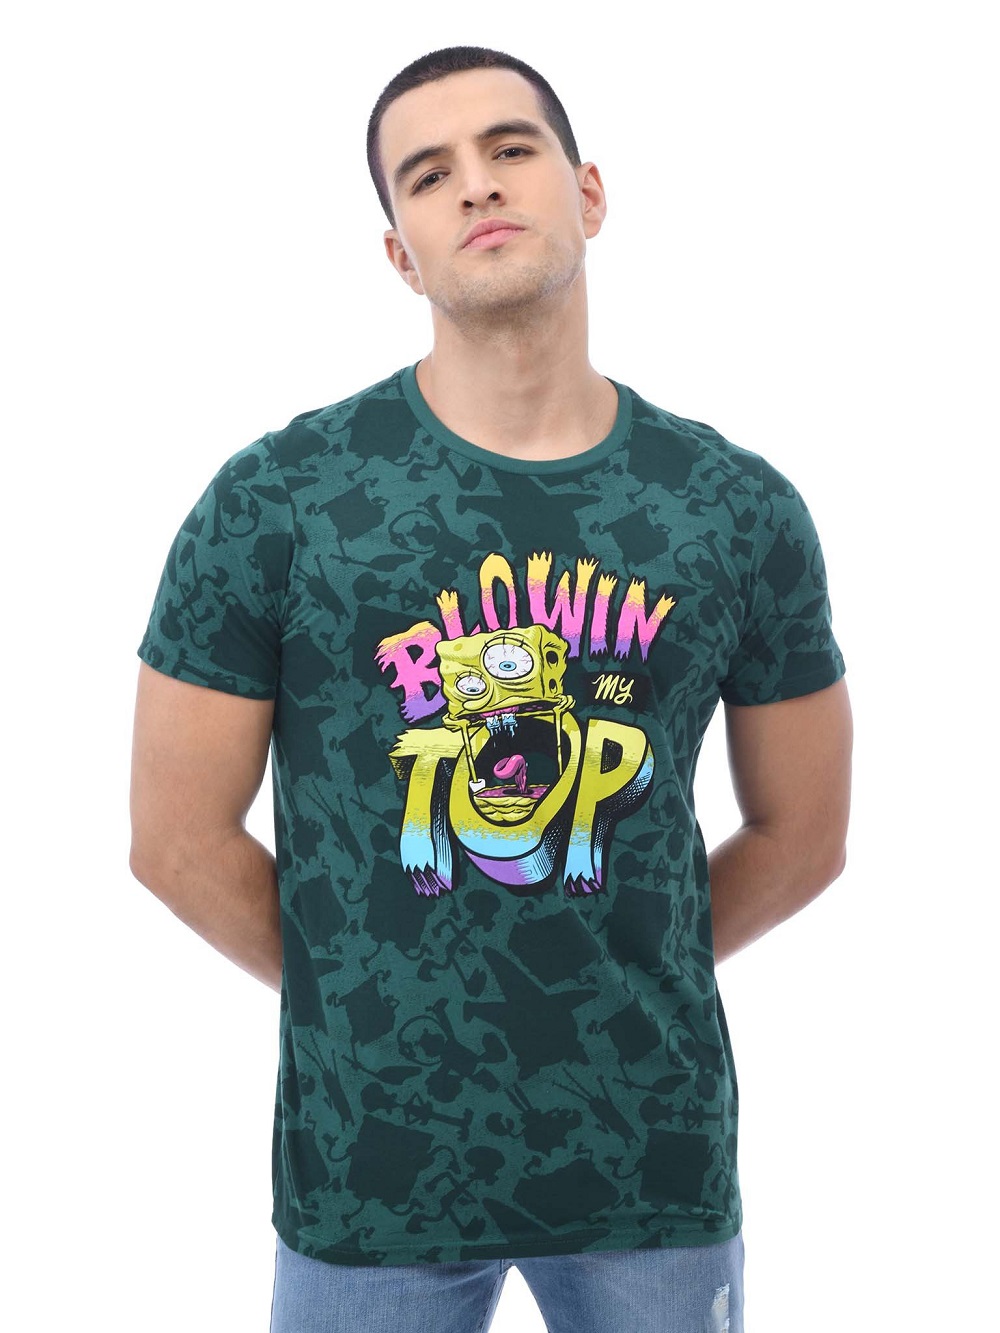 Gangster Spongebob Blowin Top 3d Shirt Full Size Up To 5xl